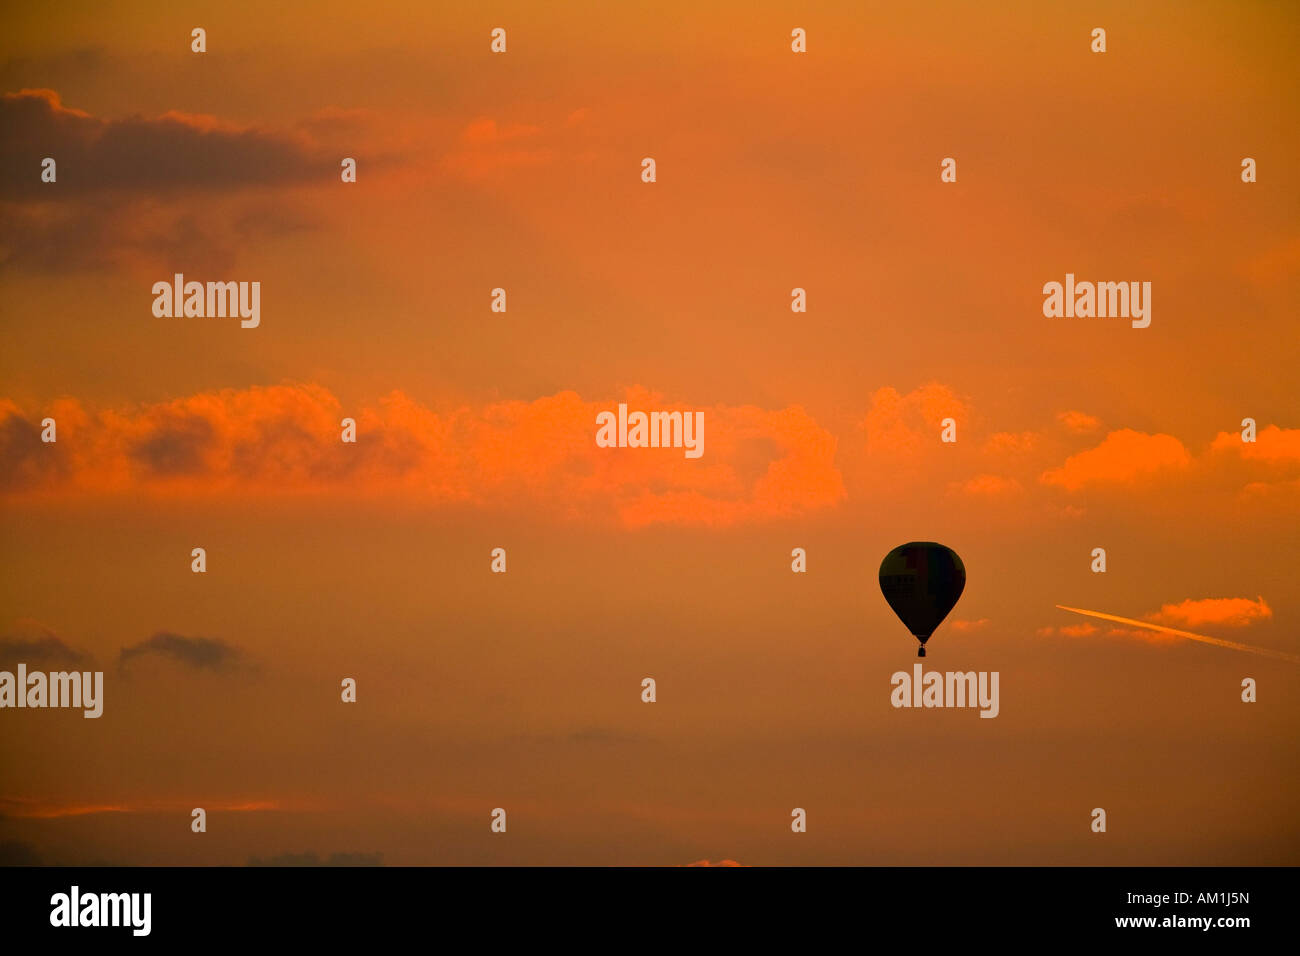 Hot-air balloon, sunset Stock Photo